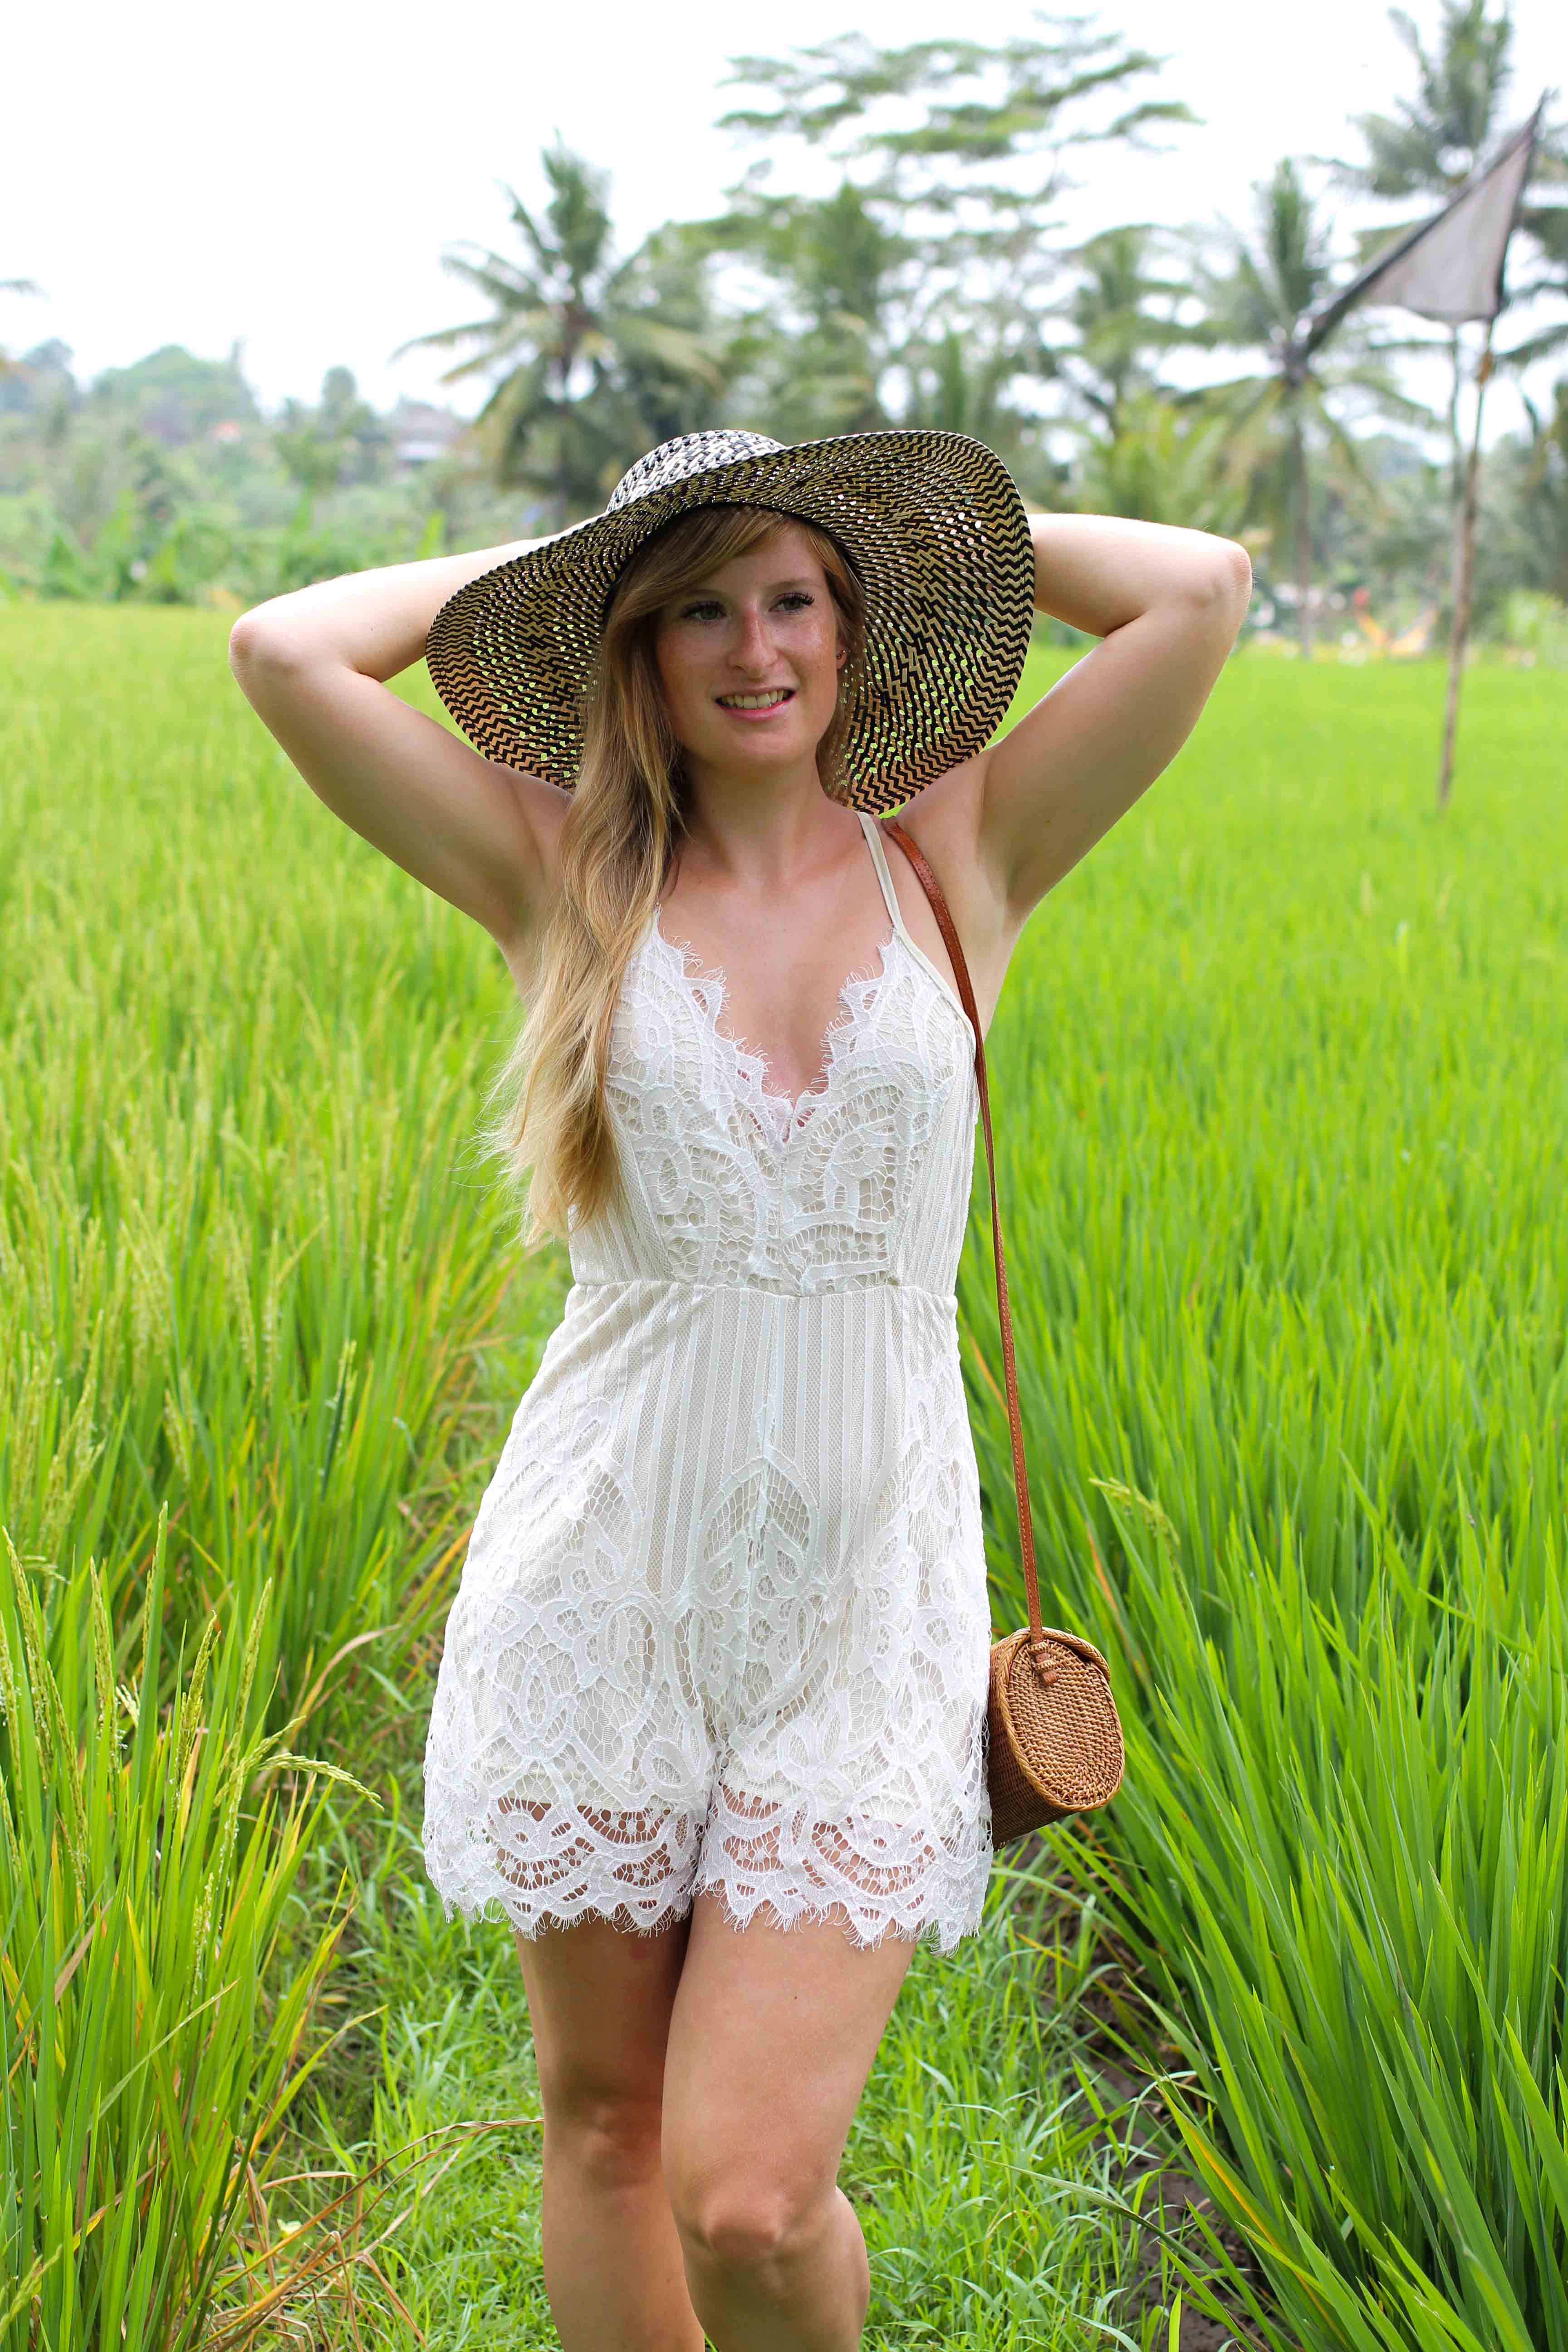 Weißer Jumpsuit kombinieren Spitze strohhut Reisfeldern Ubud Sommeroutfit Bali Modeblog Fashion